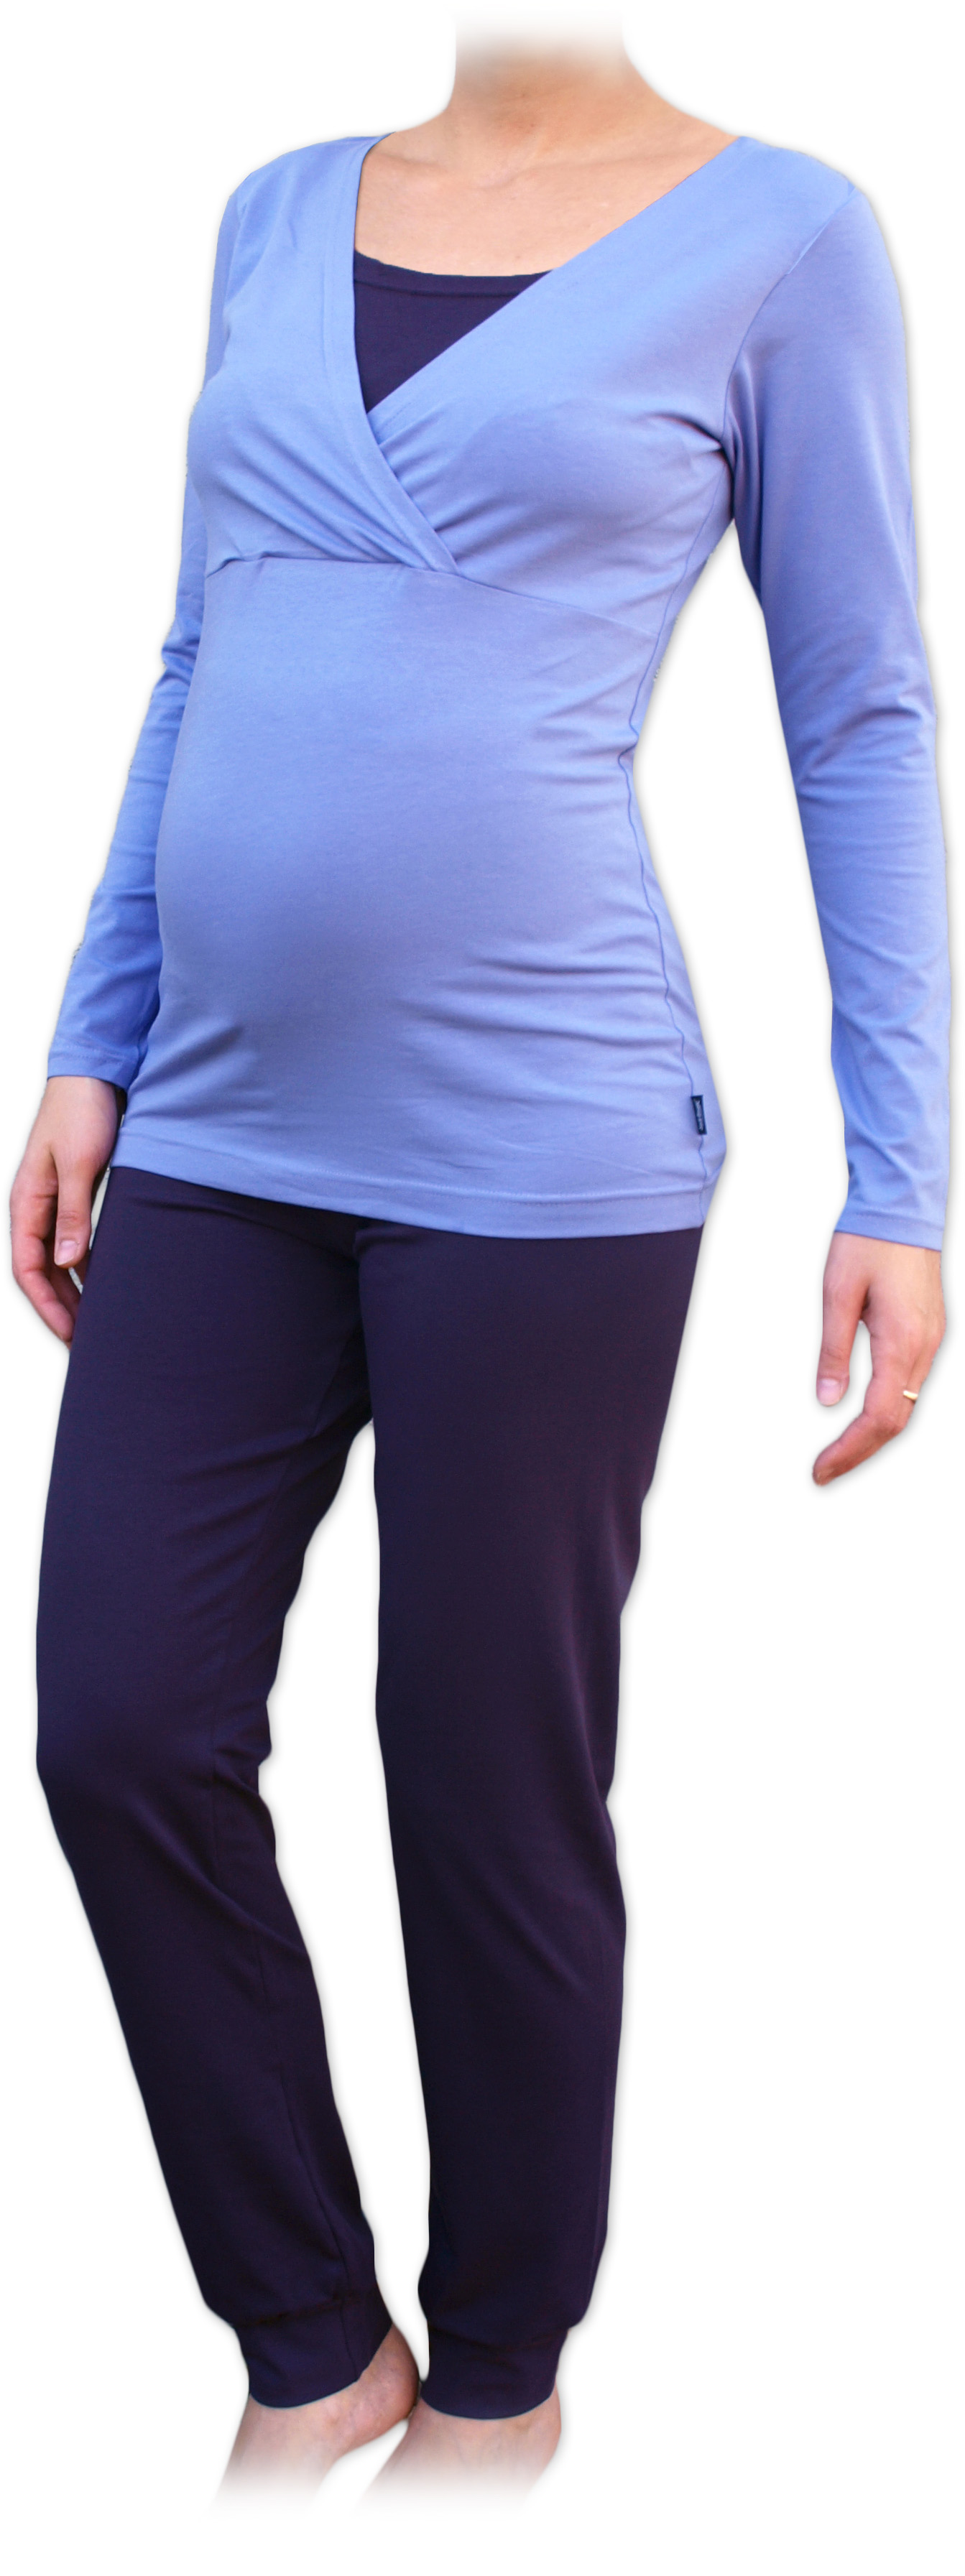 Tehotenské a dojčiace pyžamo, dlhé, svetlo / tmavo fialovej